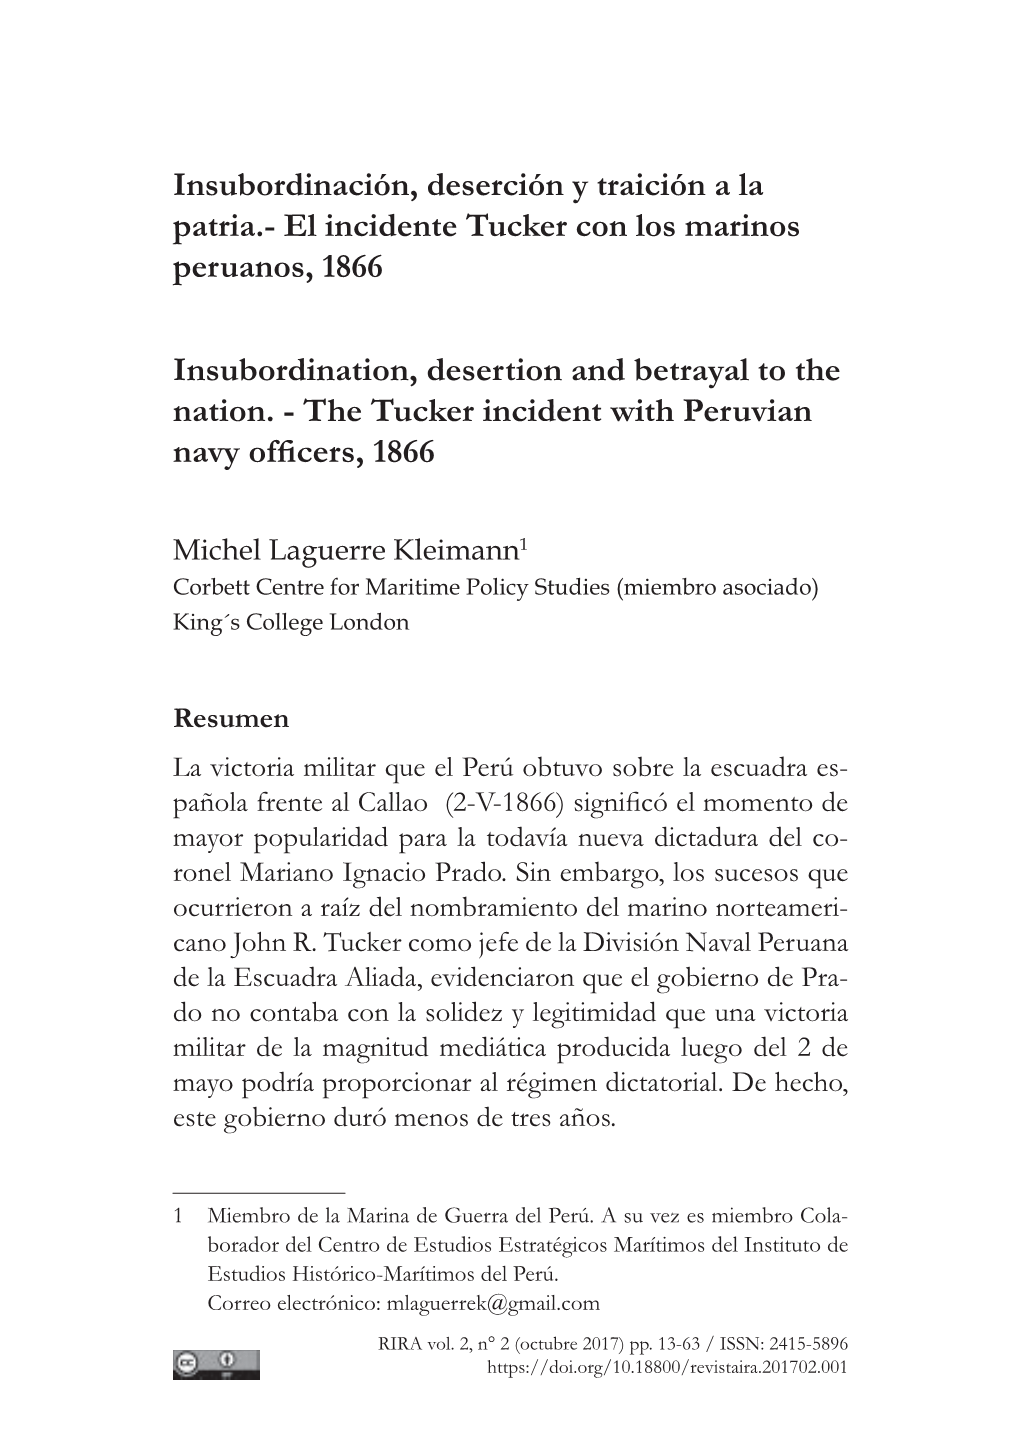 Insubordinación, Deserción Y Traición a La Patria.- El Incidente Tucker Con Los Marinos Peruanos, 1866